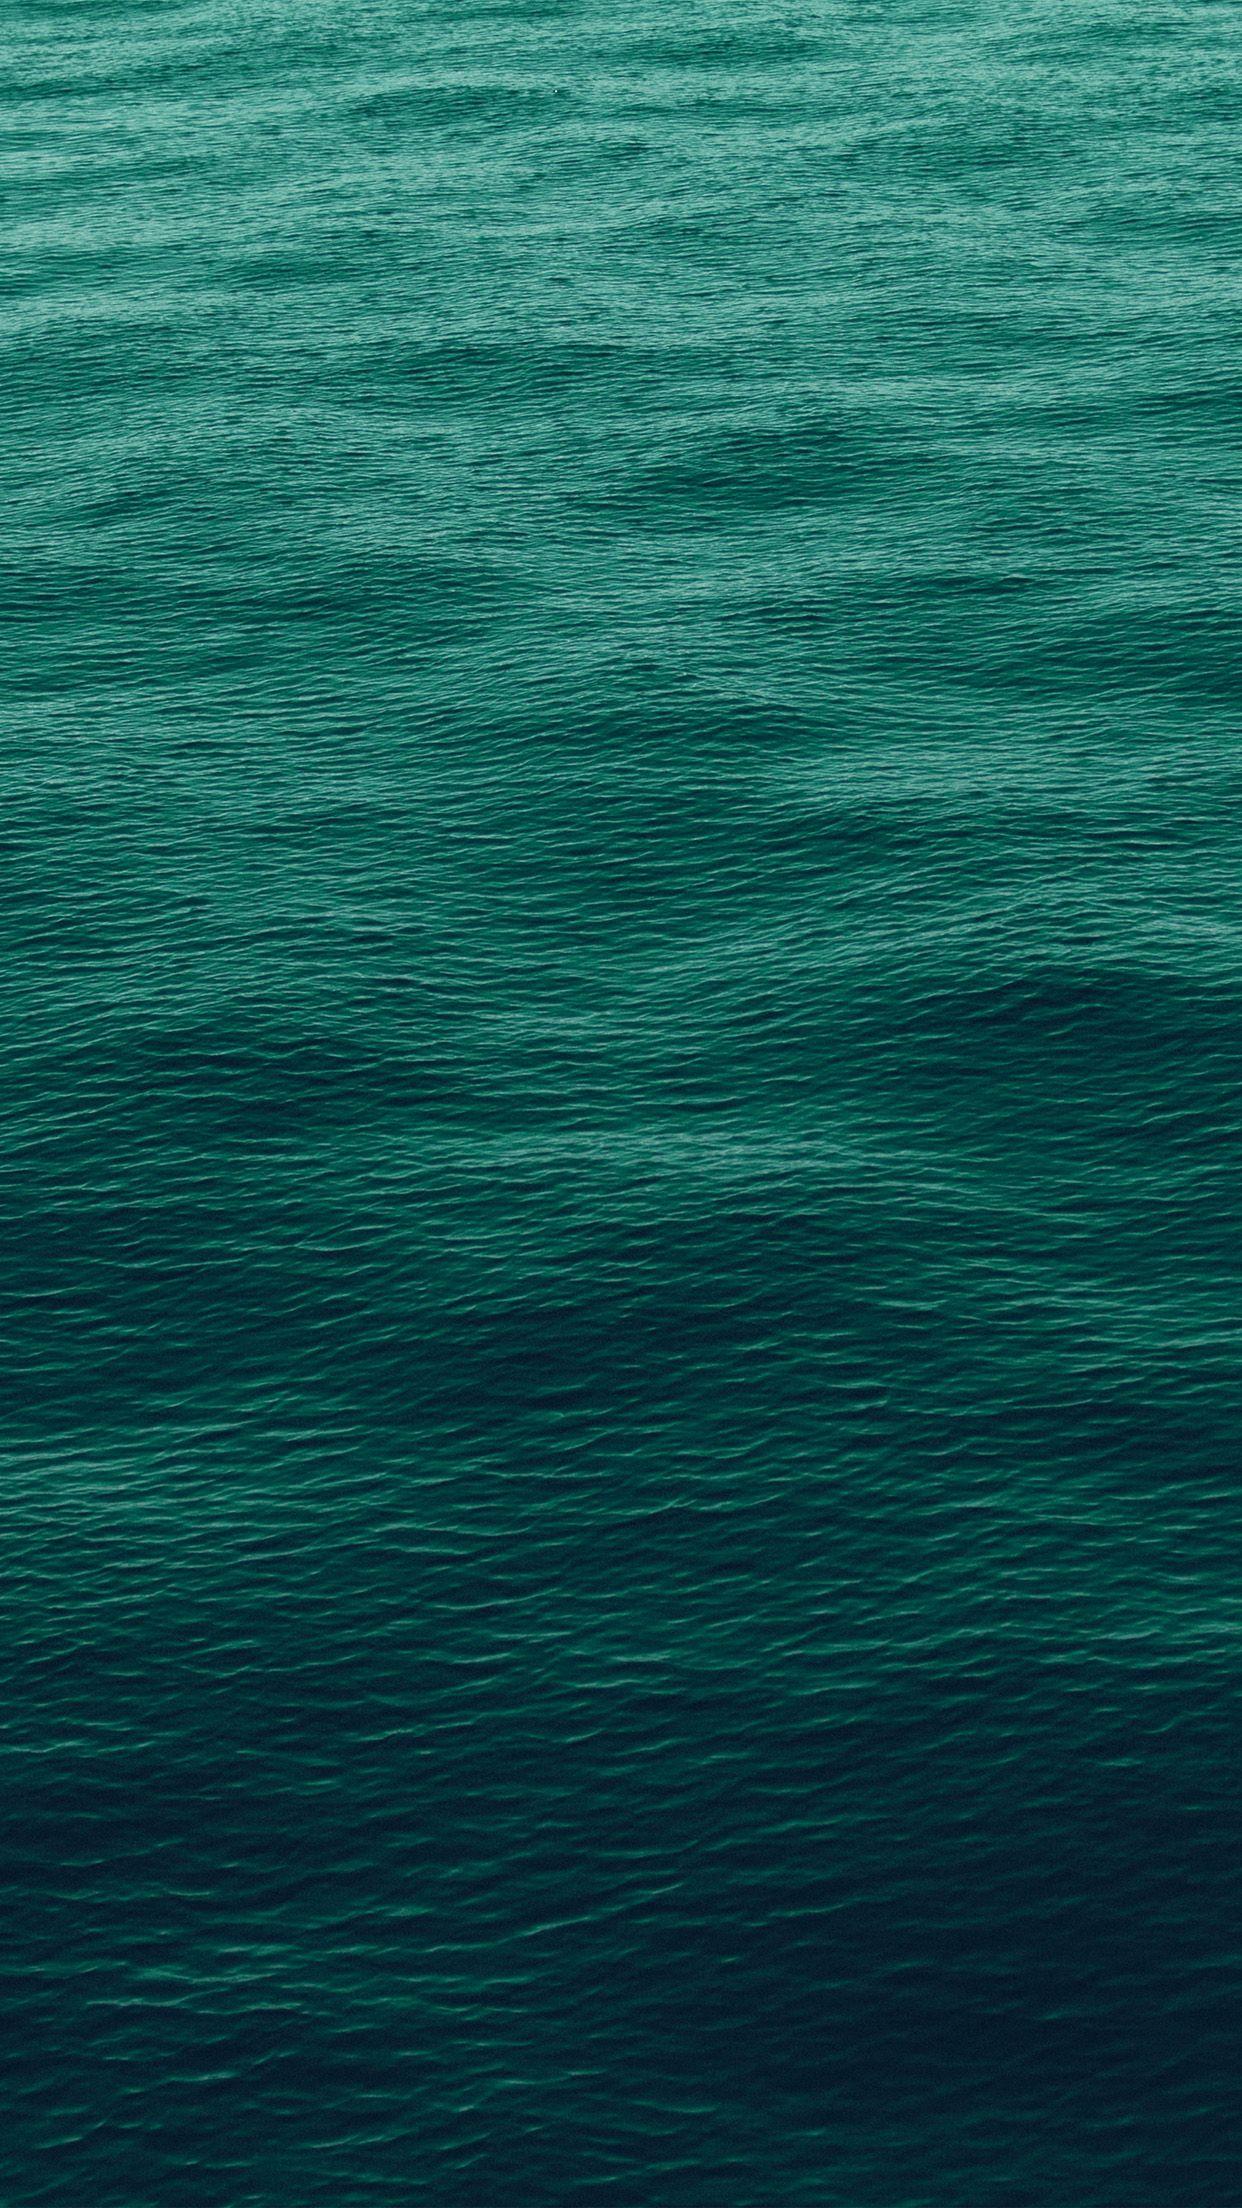 Hình nền đại dương màu xanh lá cây đậm sẽ đem đến cho bạn một cảm giác tràn đầy năng lượng và khích lệ. Bức ảnh này sẽ đưa bạn vào một thế giới đầy đam mê, với những khung cảnh rực rỡ và độc đáo. Hãy cùng khám phá và tìm lại sự cân bằng và thư giãn cho chính mình.